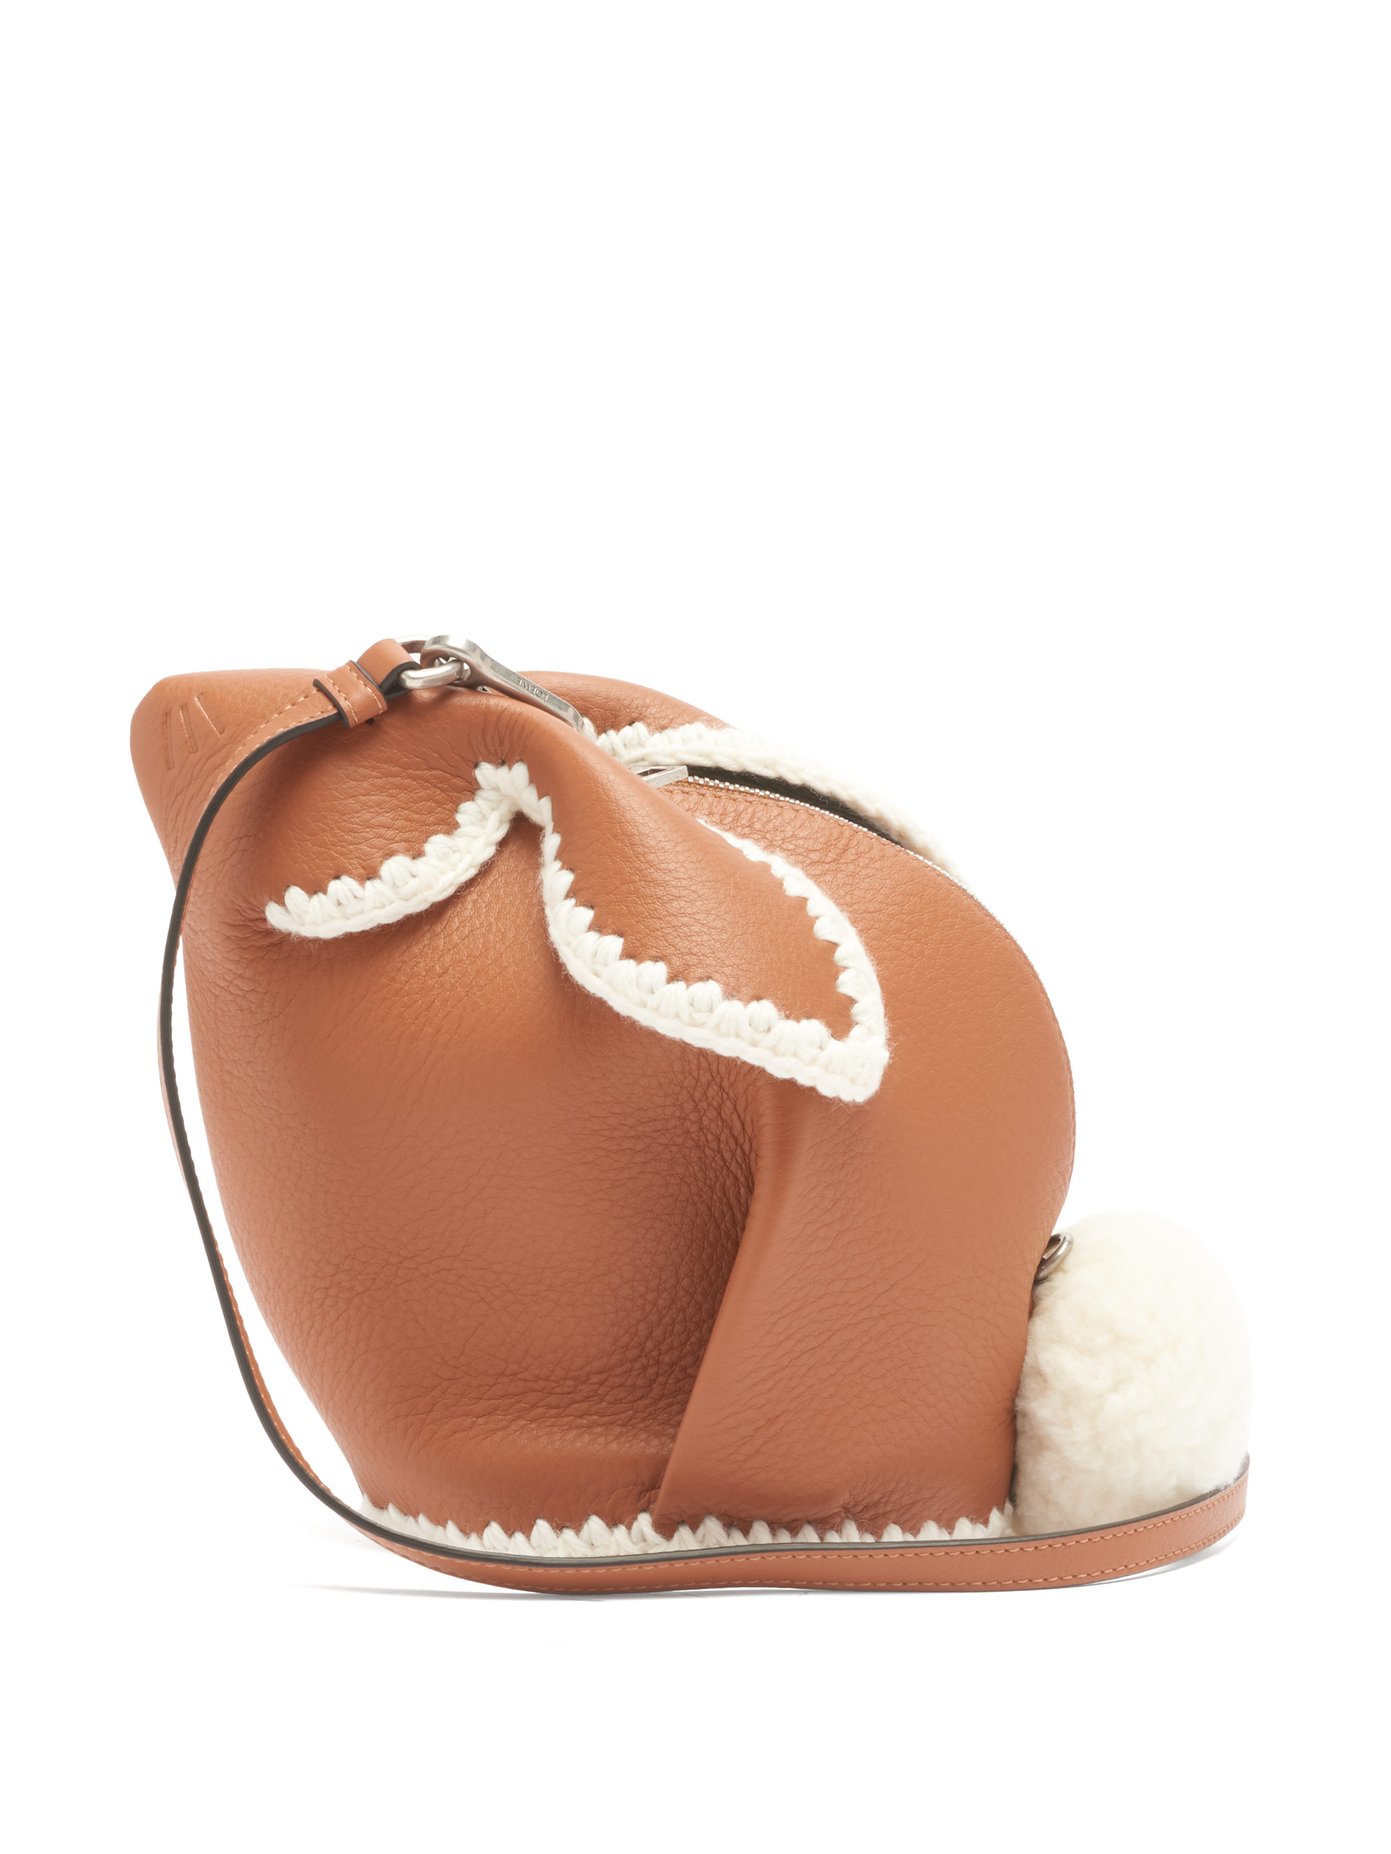 Bunny leather cross-body bag | Loewe 